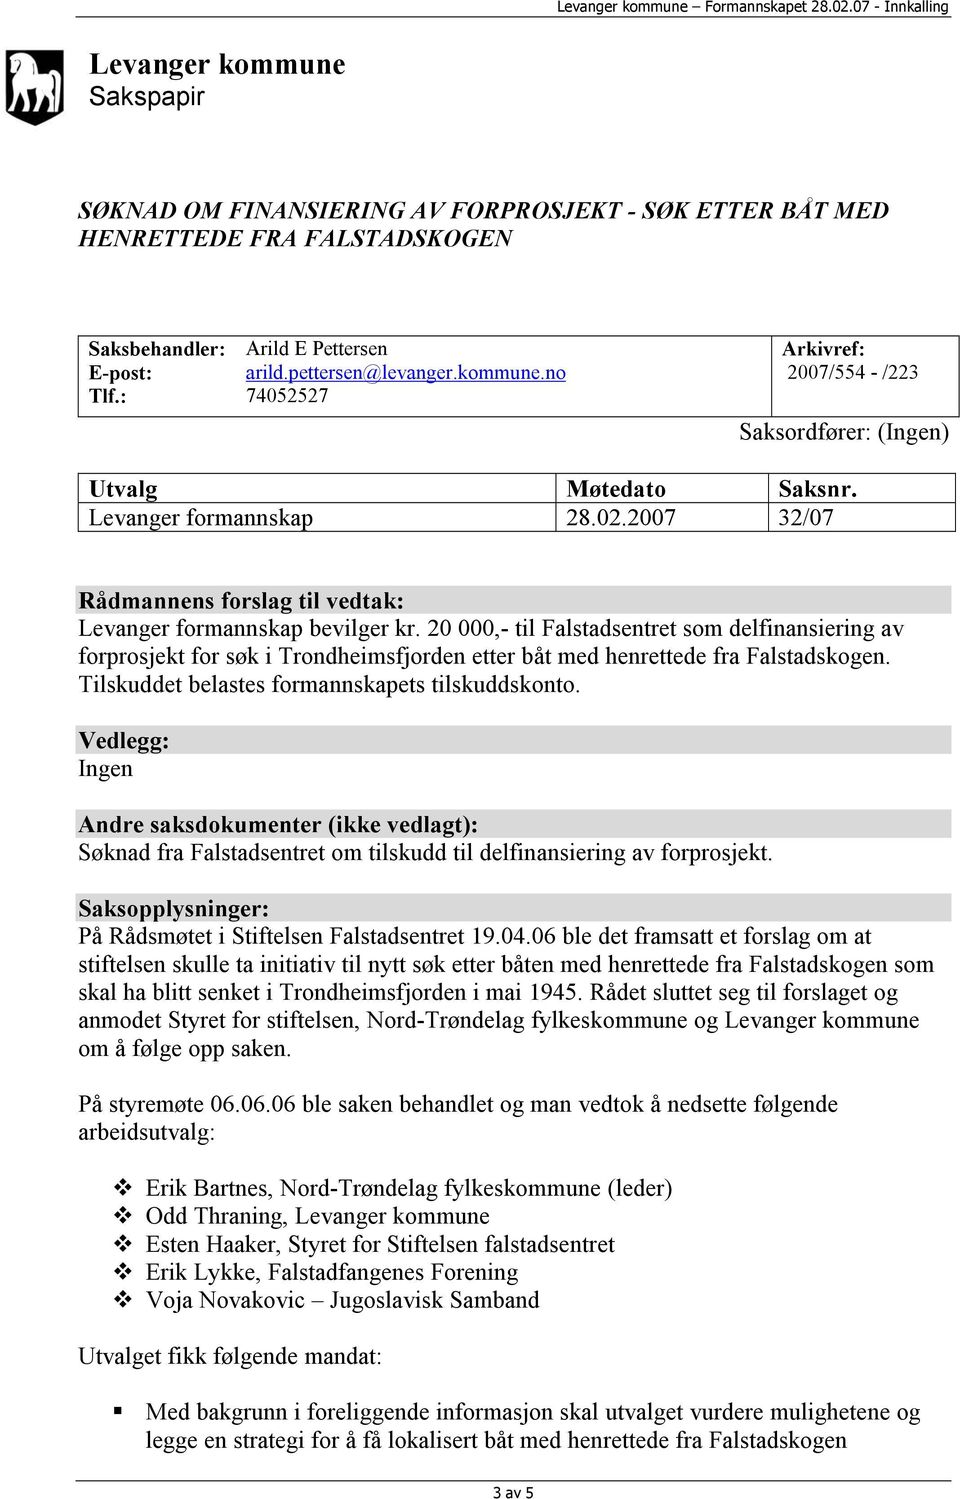 20 000,- til Falstadsentret som delfinansiering av forprosjekt for søk i Trondheimsfjorden etter båt med henrettede fra Falstadskogen. Tilskuddet belastes formannskapets tilskuddskonto.